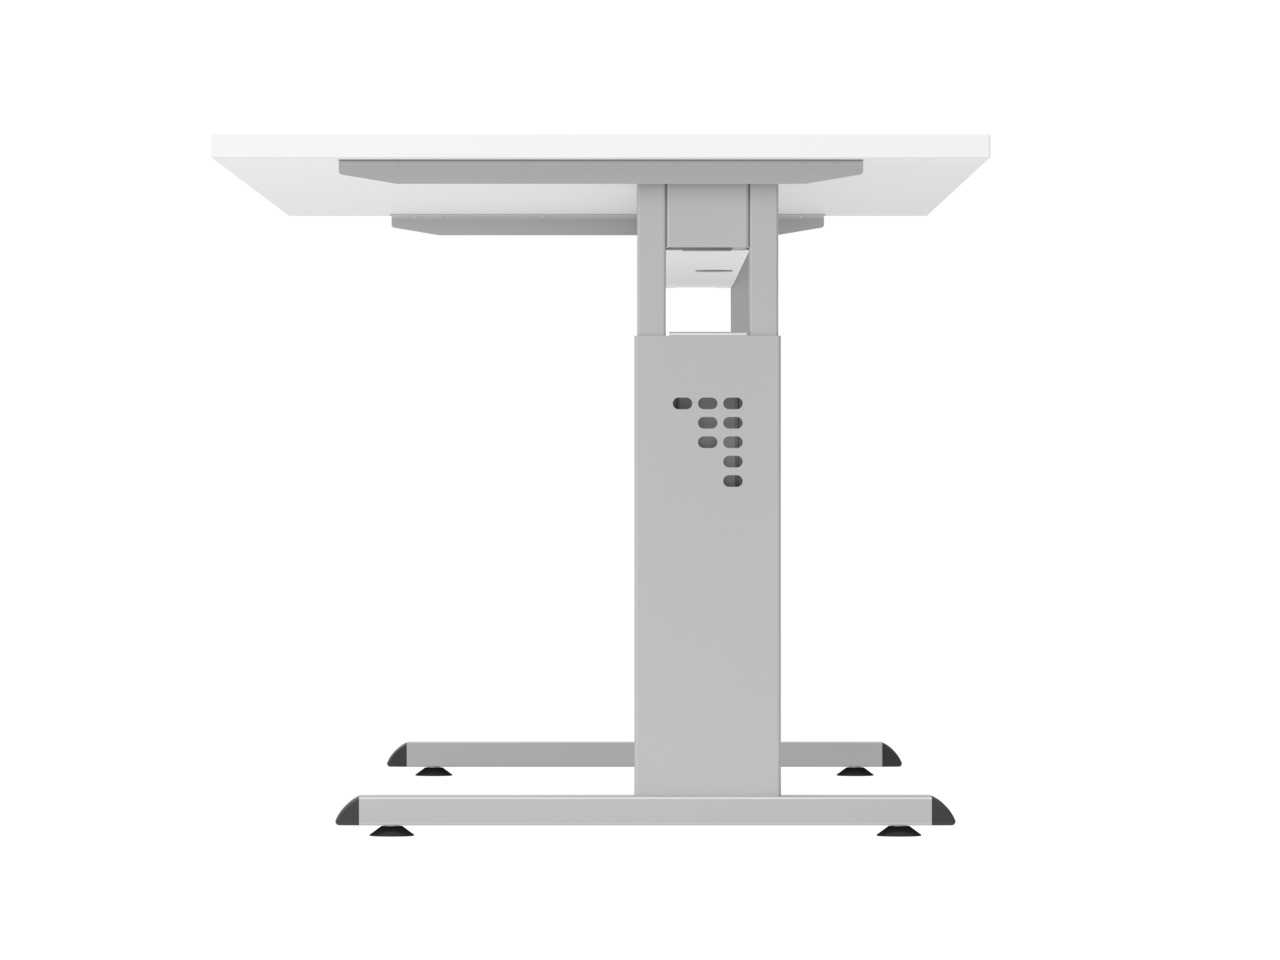 Sitz-Steh-Schreibtisch Juhani | Ahorn | Breite 120cm | Höhe 65-85cm | stufenlos höhenverstellbar | Rechteckform